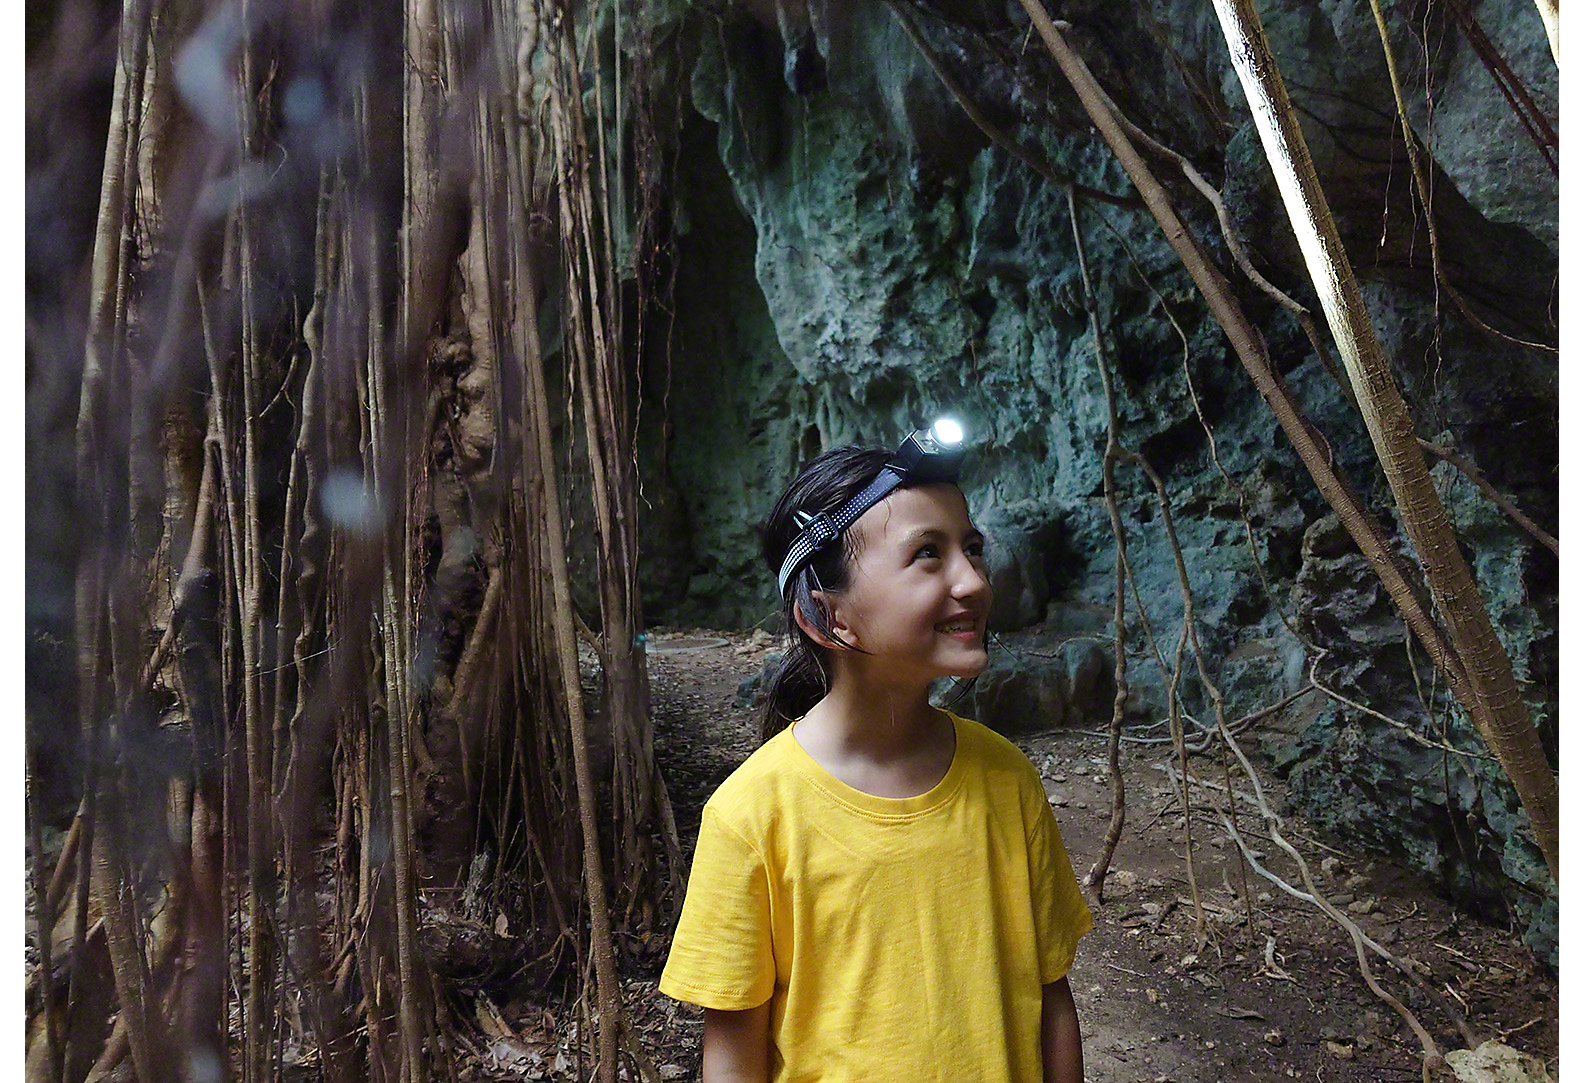 Meisje in geel T-shirt met hoofdlamp lopend tussen bomen en rotswand